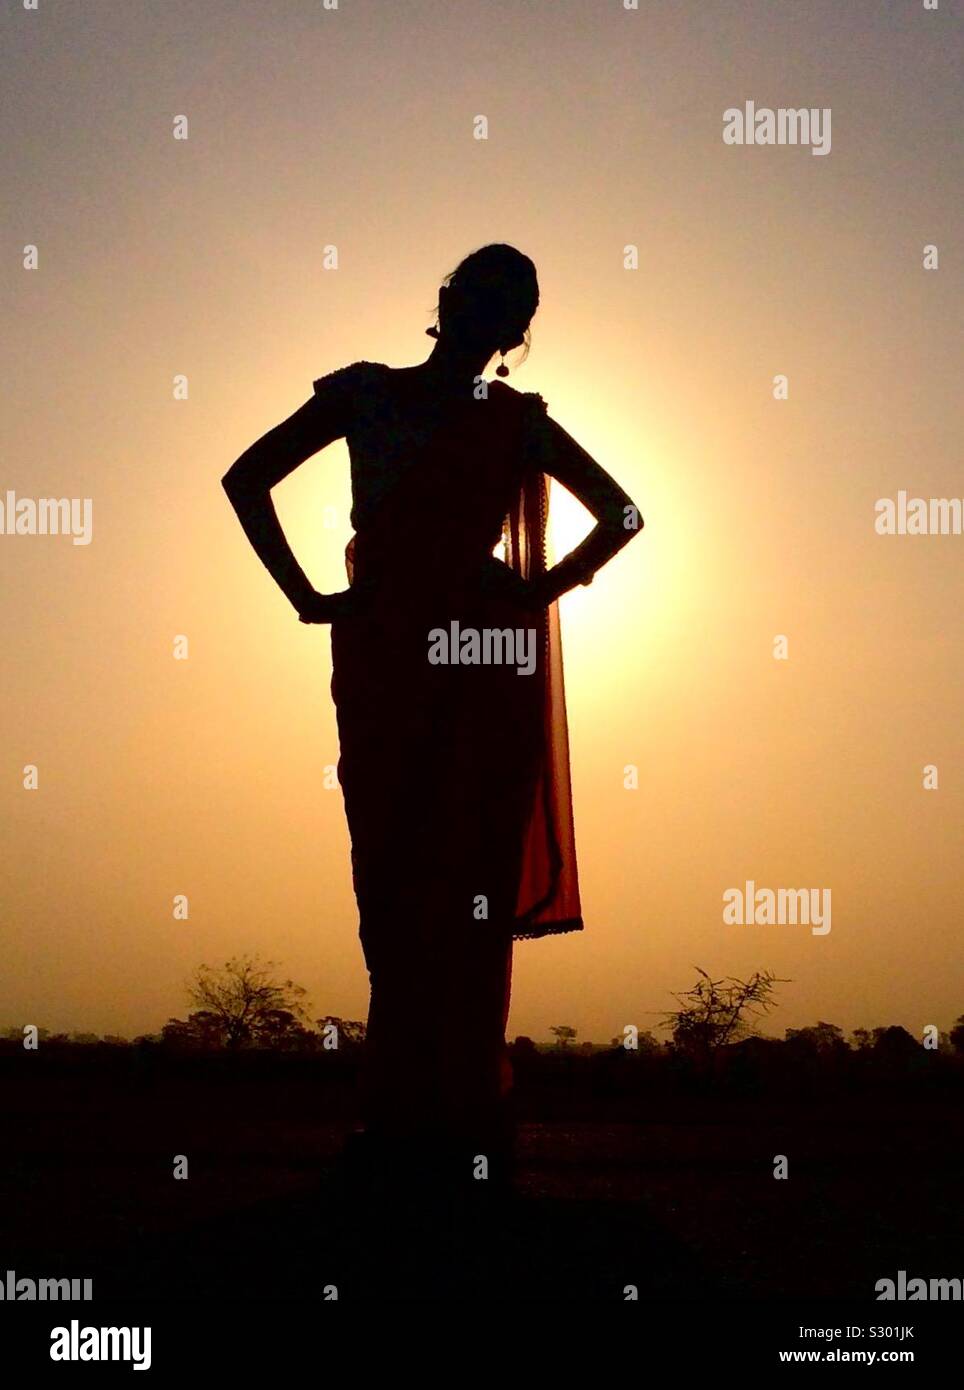 Beautiful girl in saree silhouette Stock Photo - Alamy